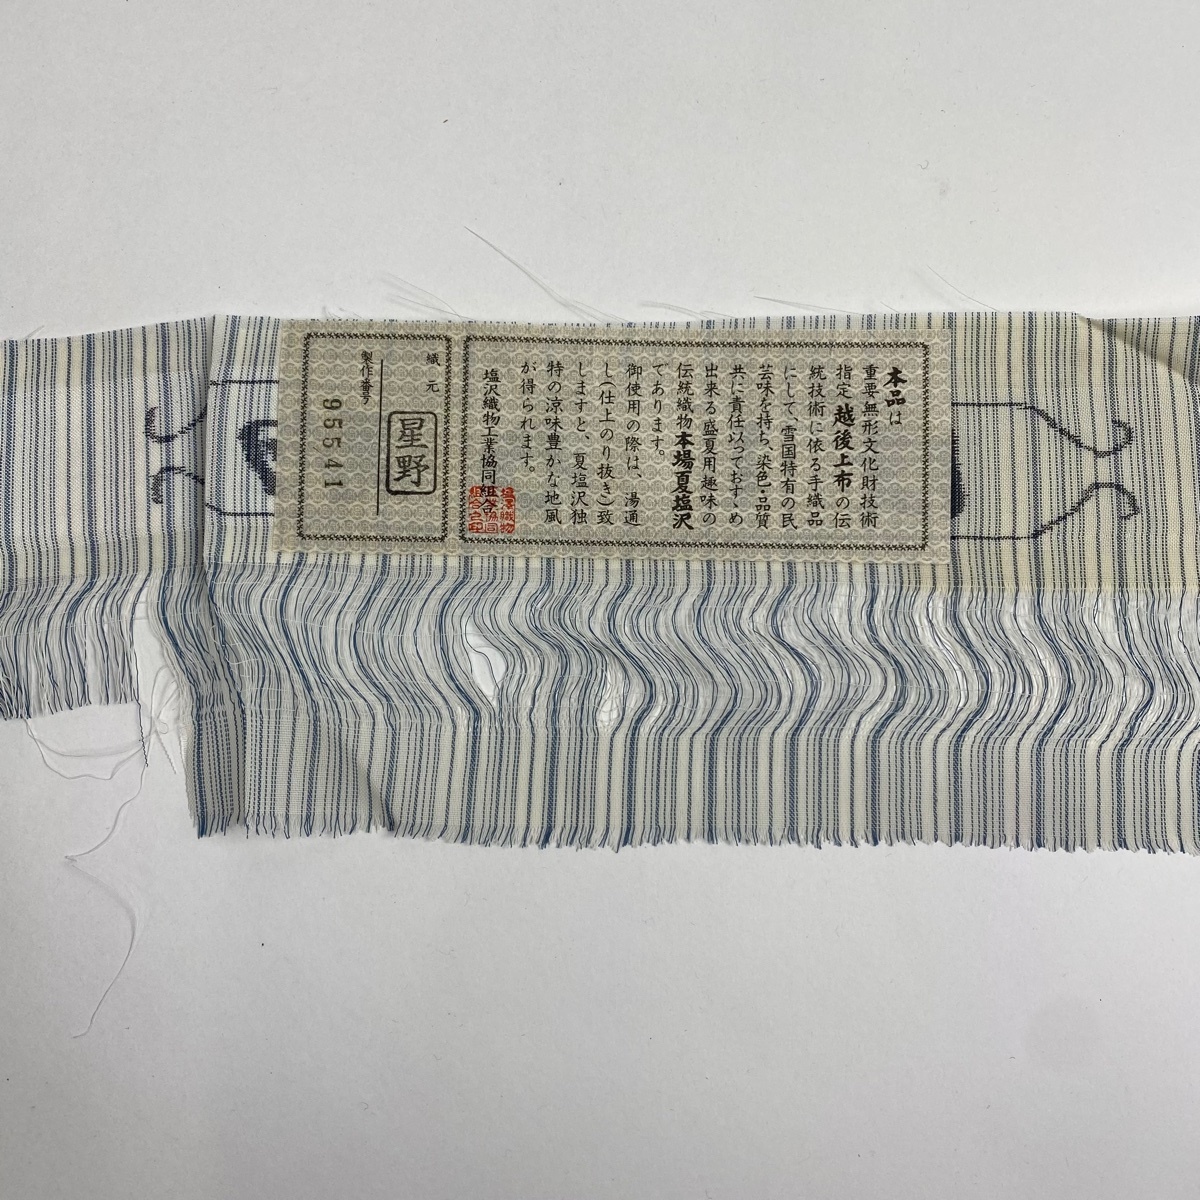  эпонж из Сиодзава длина 166.5cm длина рукава 67.5cm L незначительный предмет лето эпонж доказательство бумага длина . синий серый натуральный шелк замечательная вещь [ б/у ]